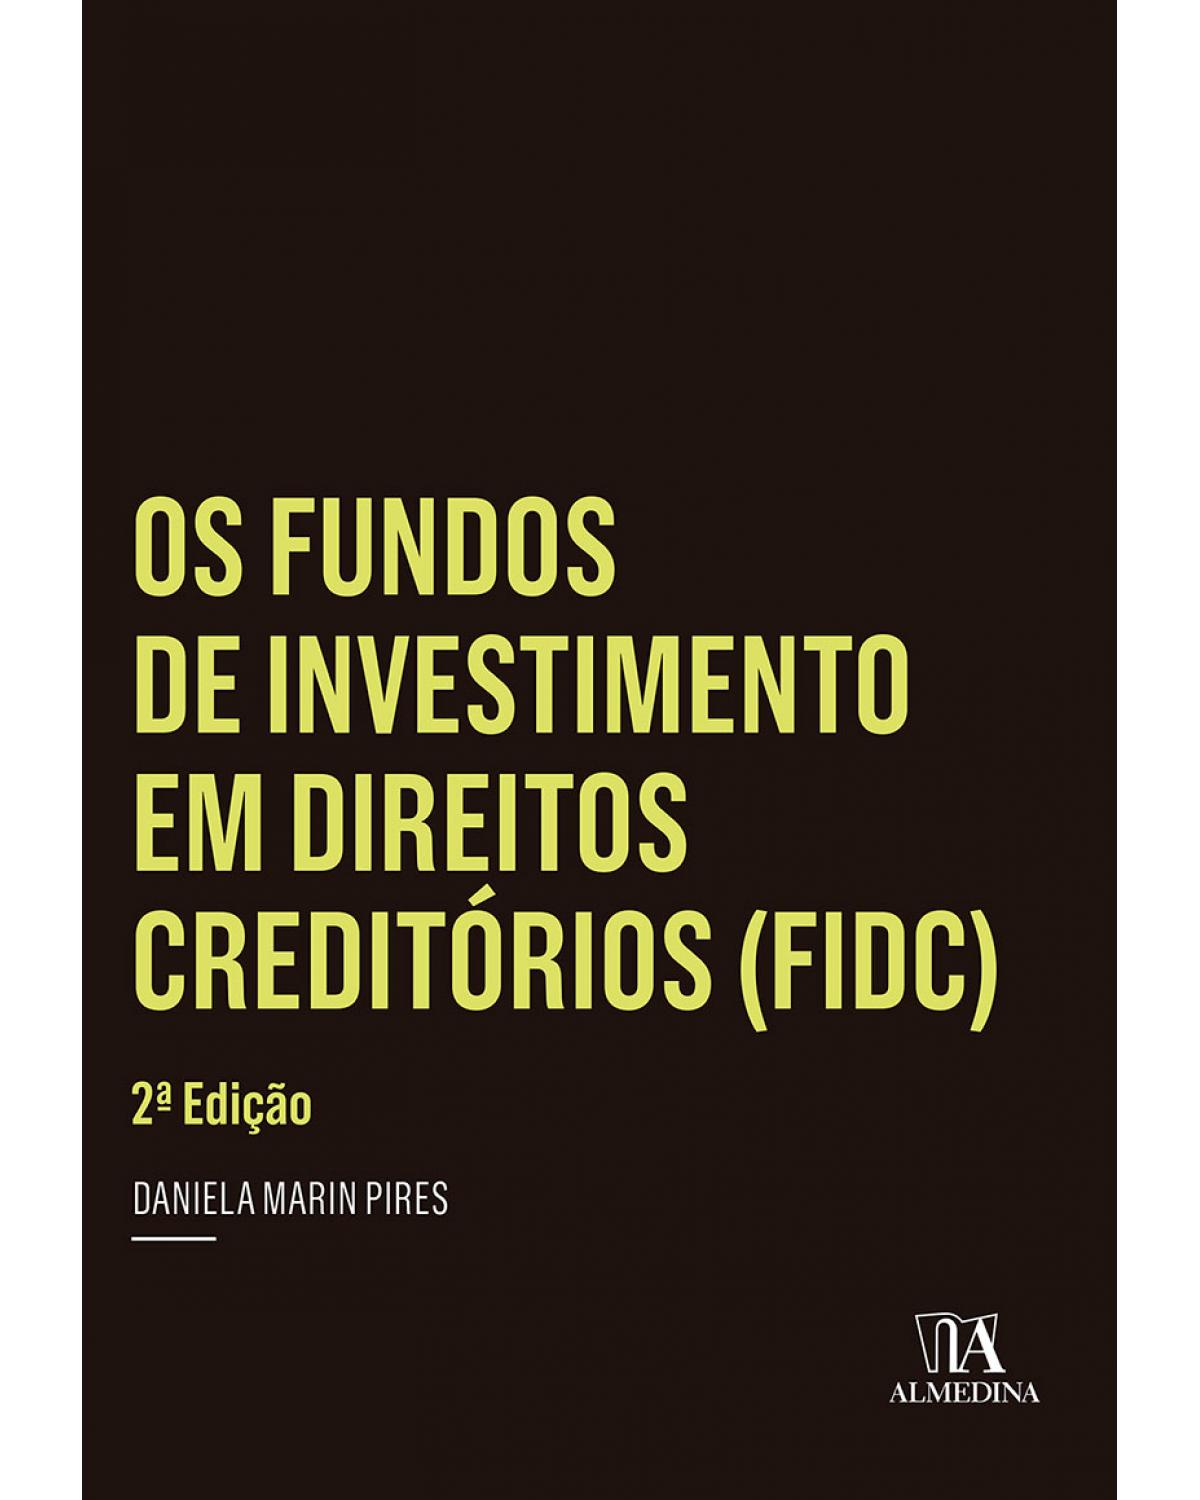 Os fundos de investimento em direitos creditórios (FIDC) - 2ª Edição | 2015